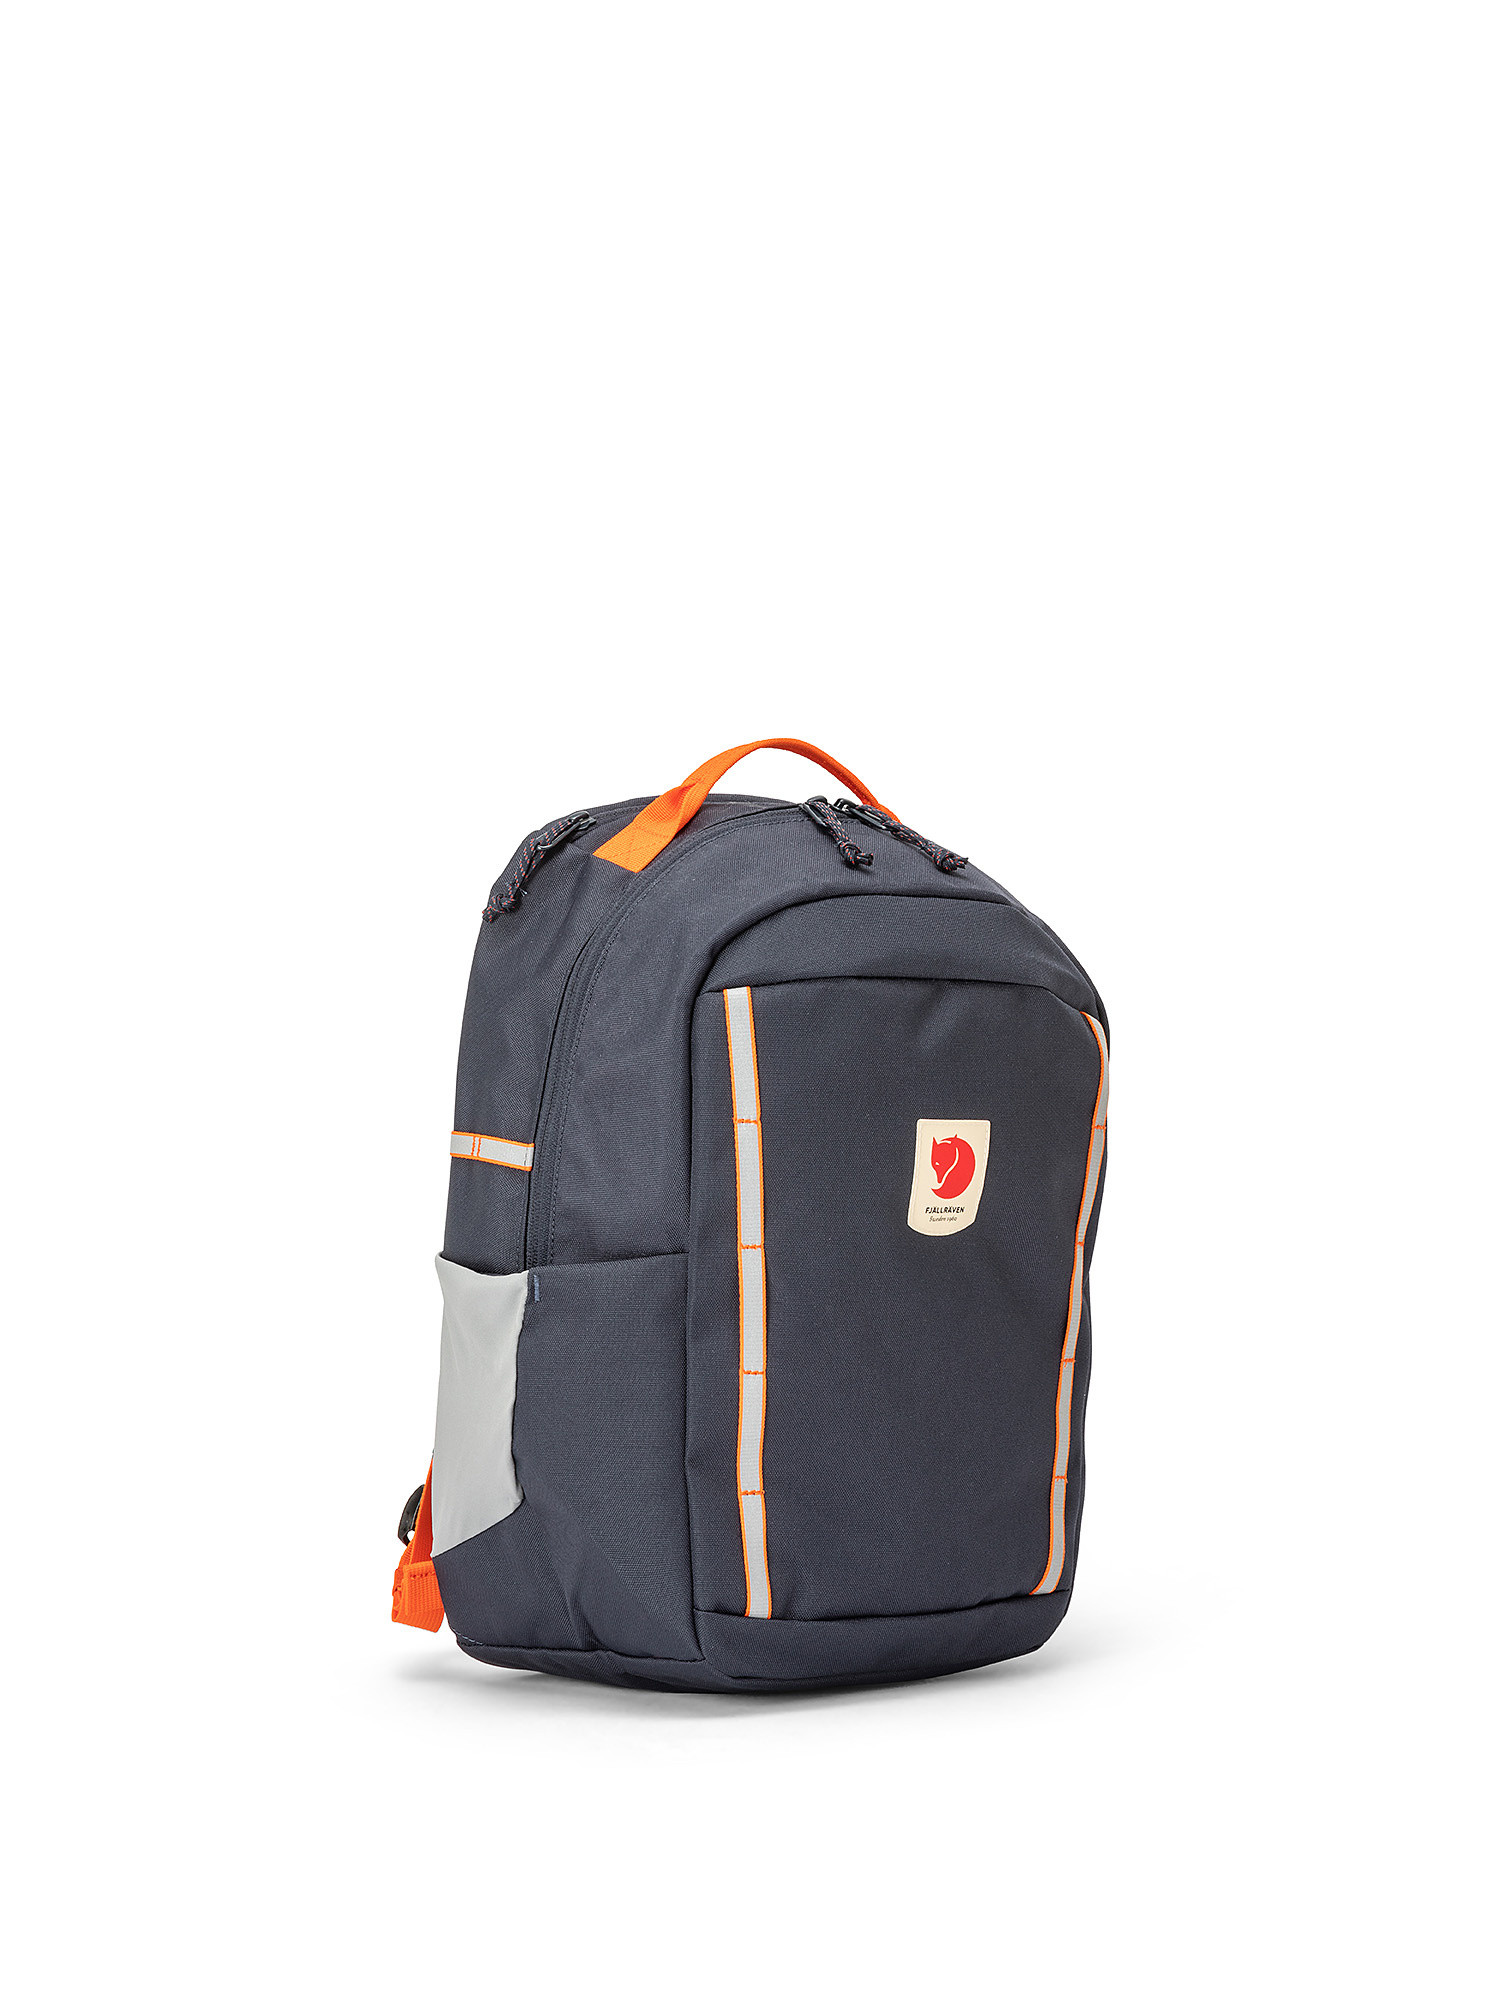 Backpack waterproof capacity of 15 liters, Blue, large image number 1